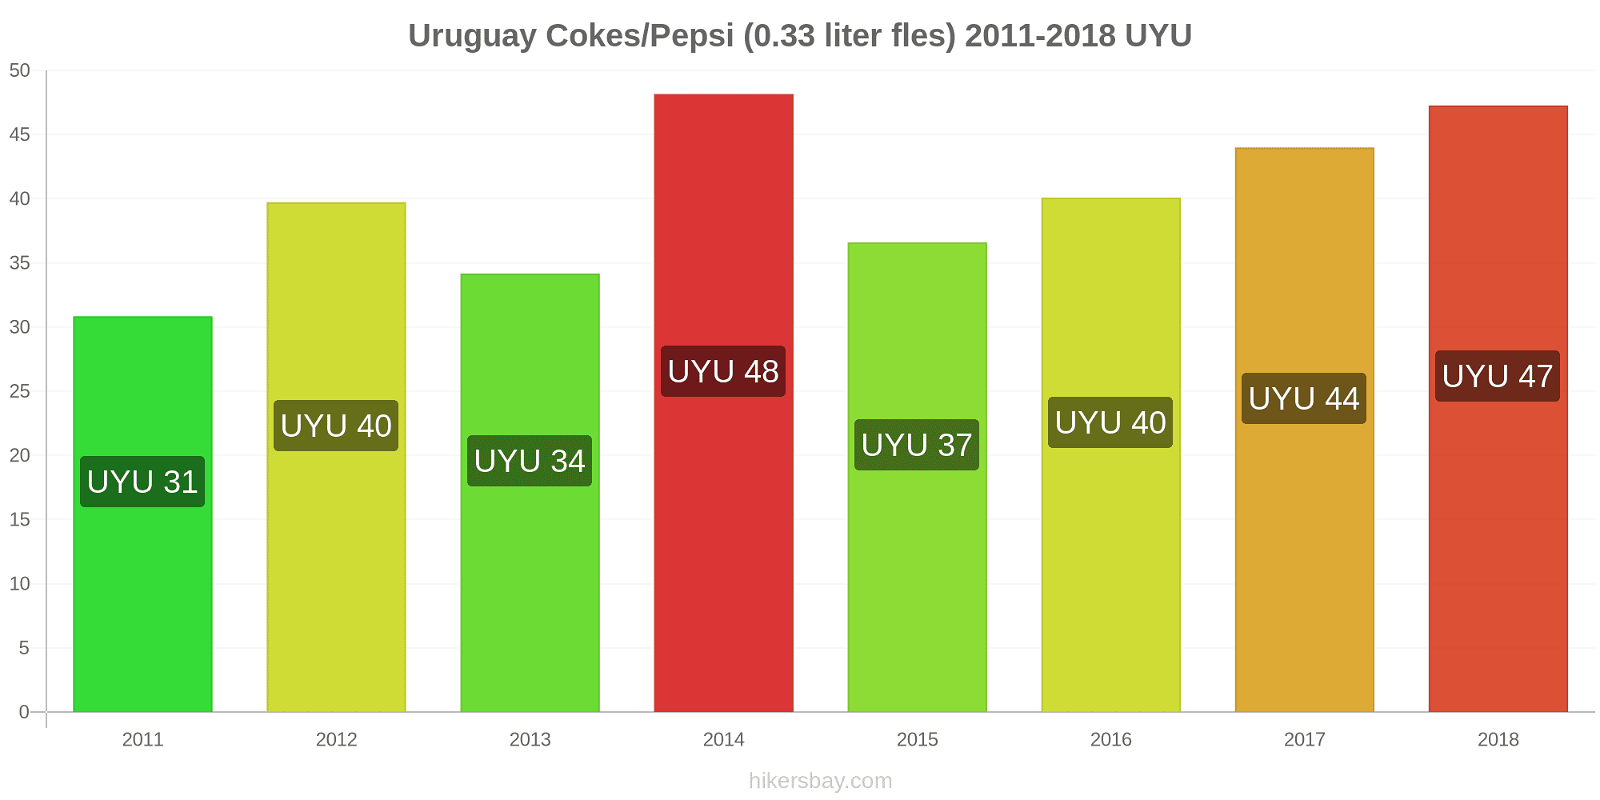 Uruguay prijswijzigingen Coca-Cola/Pepsi (0.33 liter fles) hikersbay.com